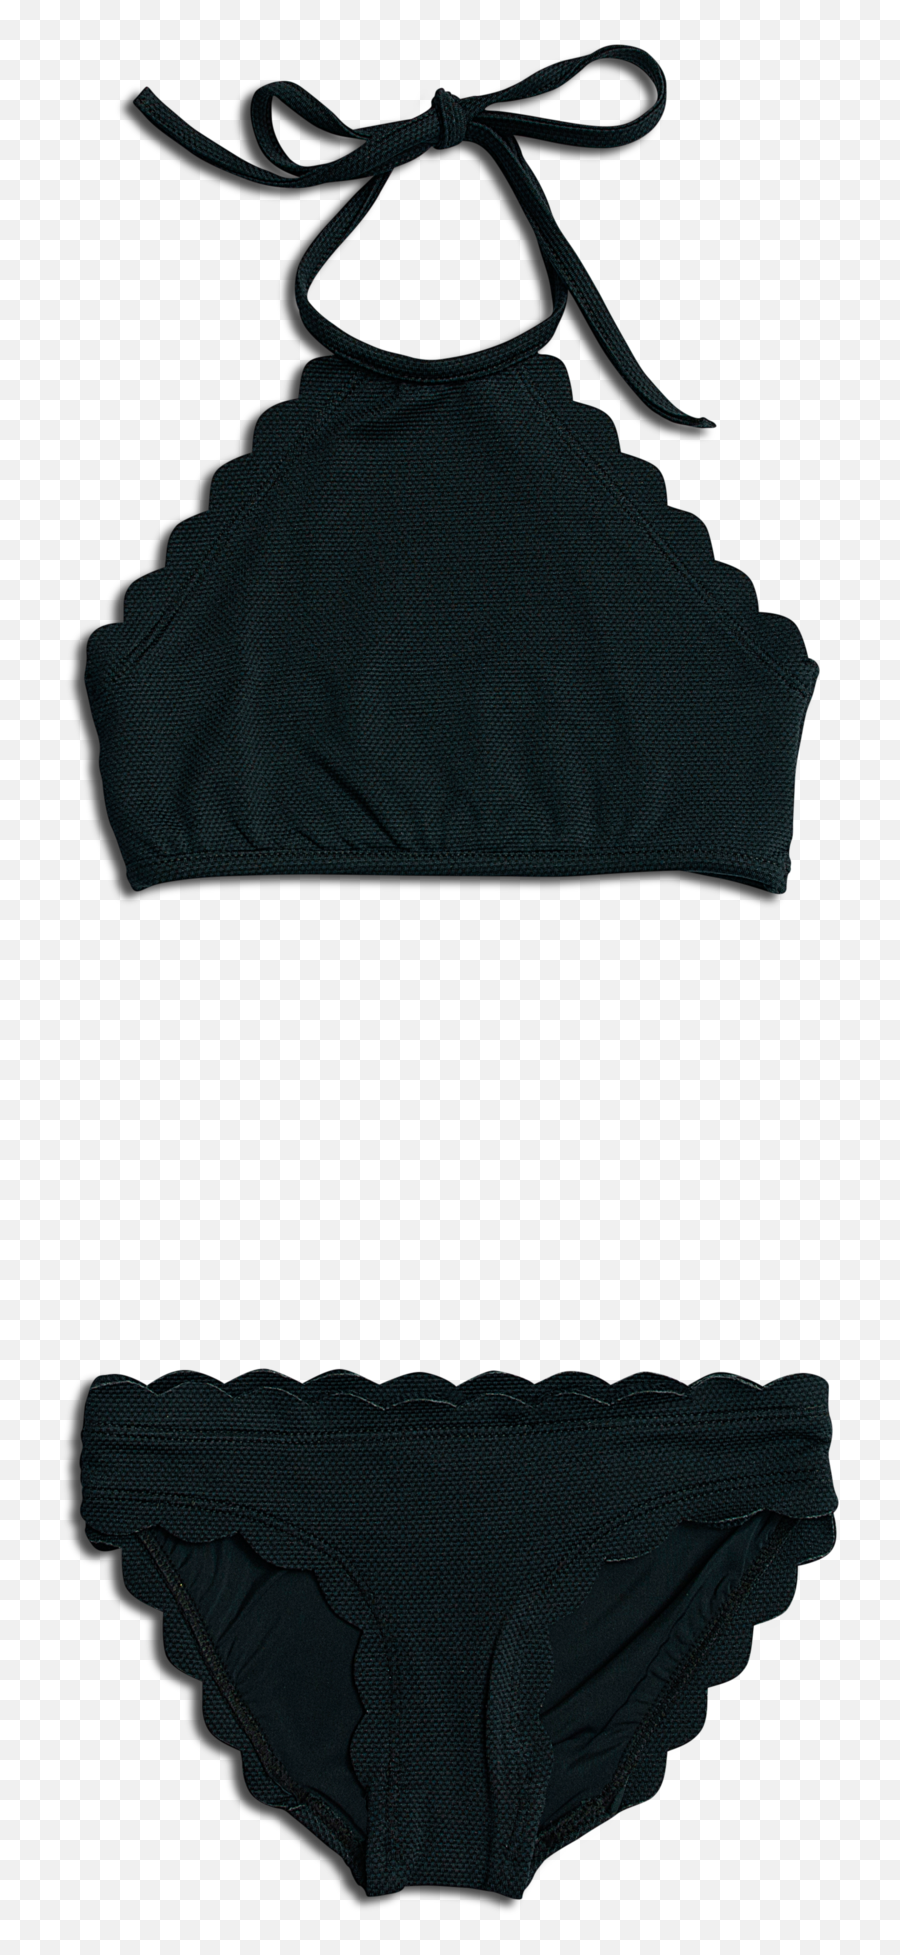 Valimare Laguna Neoprene Black Bikini - Solid Emoji,Emoji Bikini Top